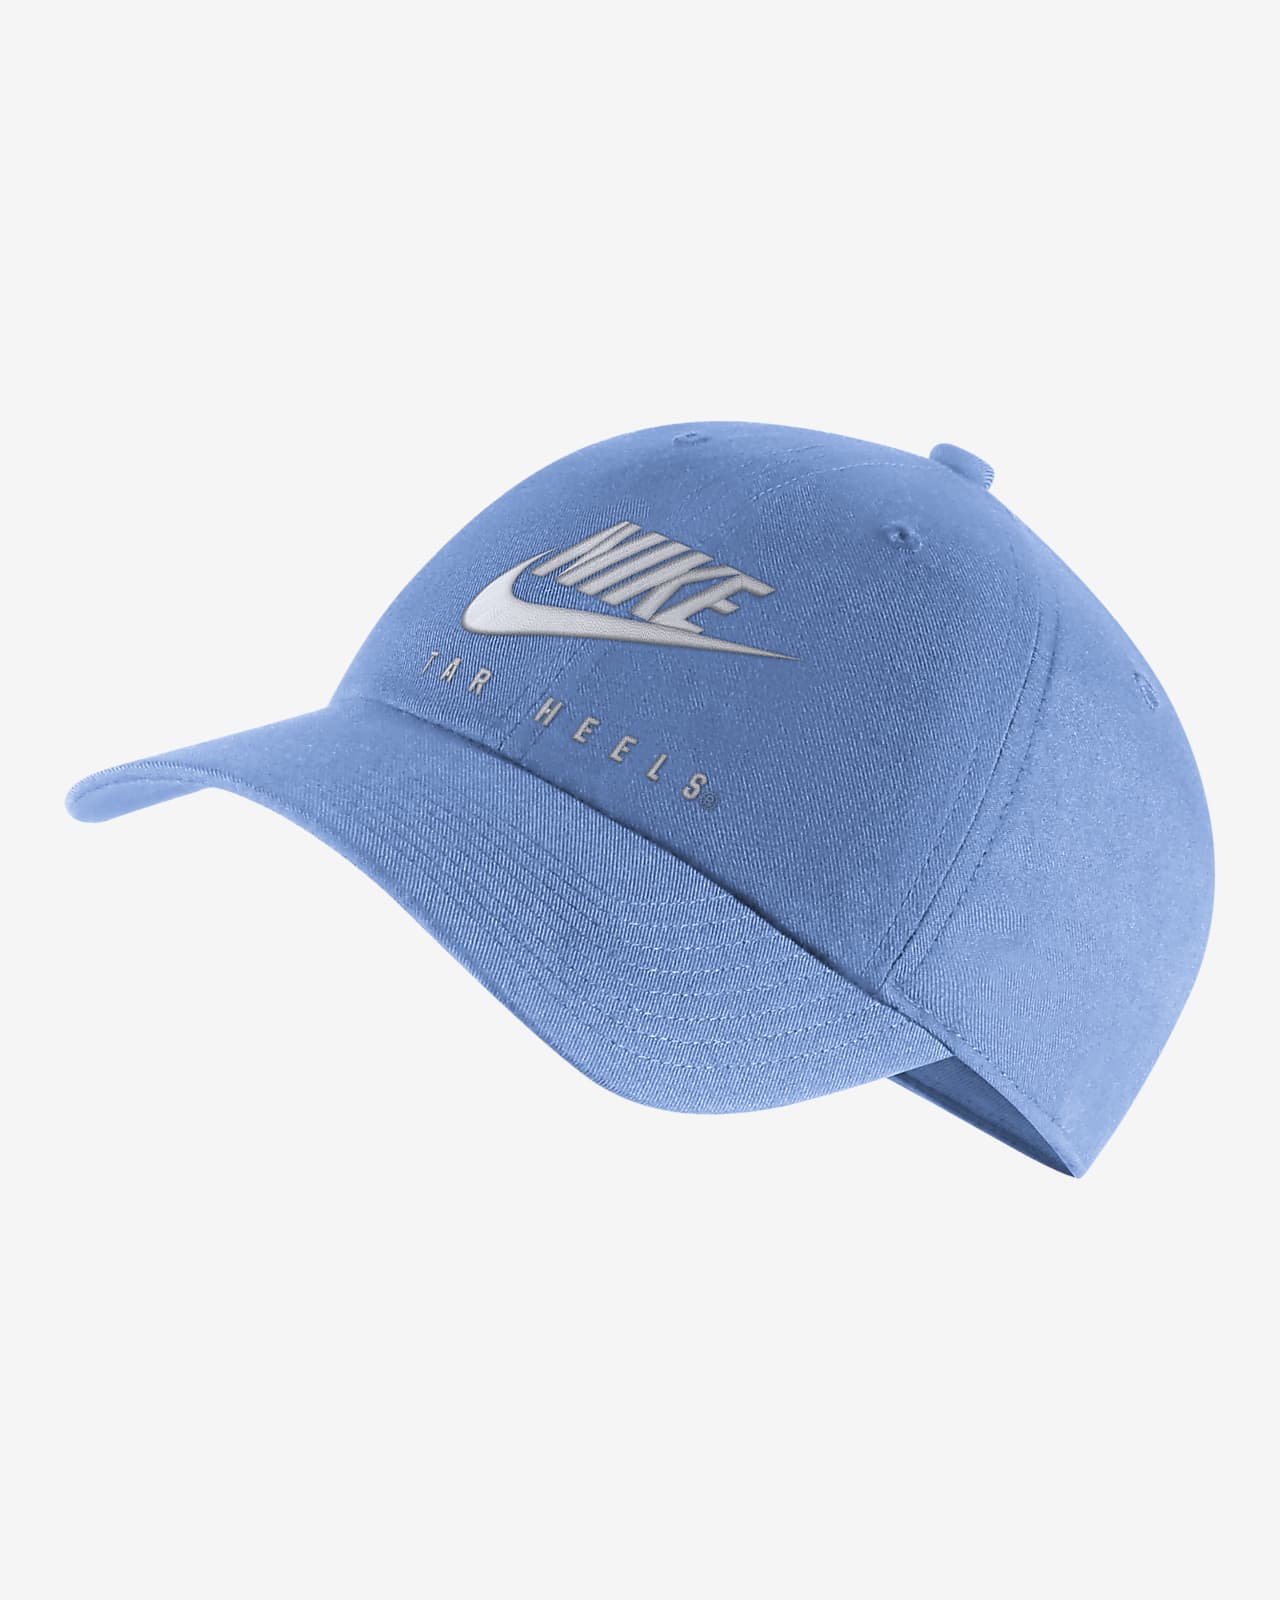 Nike College Heritage86 (UNC) Adjustable Hat. Nike.com